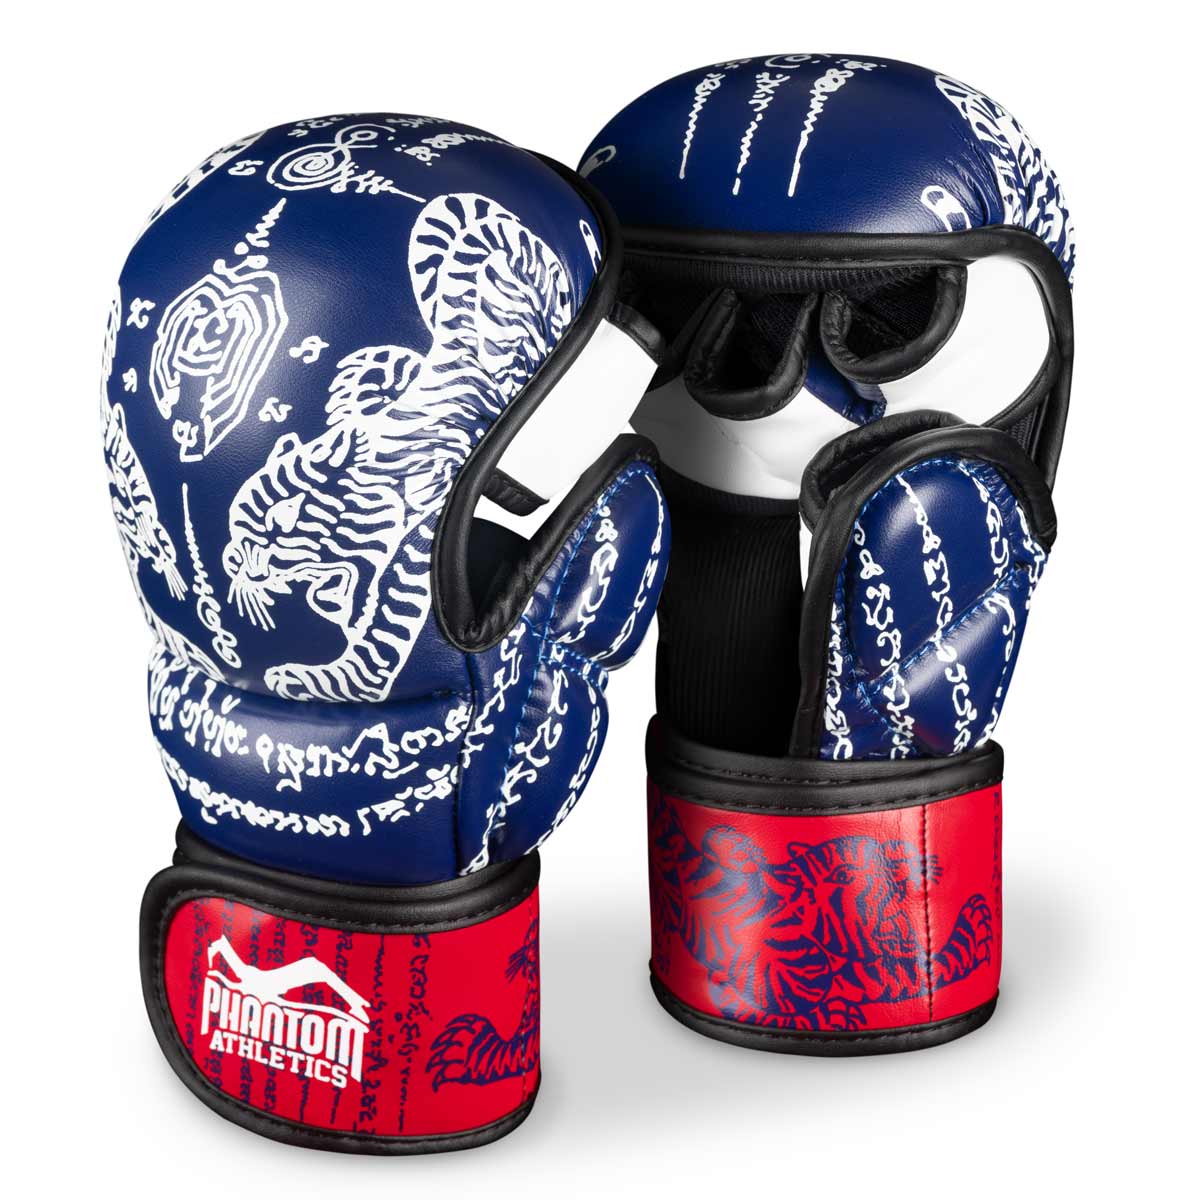 Guanti Phantom Muay Thai per boxe tailandese e sparring, competizione e allenamento MMA. Nel design tradizionale Sak Yant e nel colore blu/rosso.